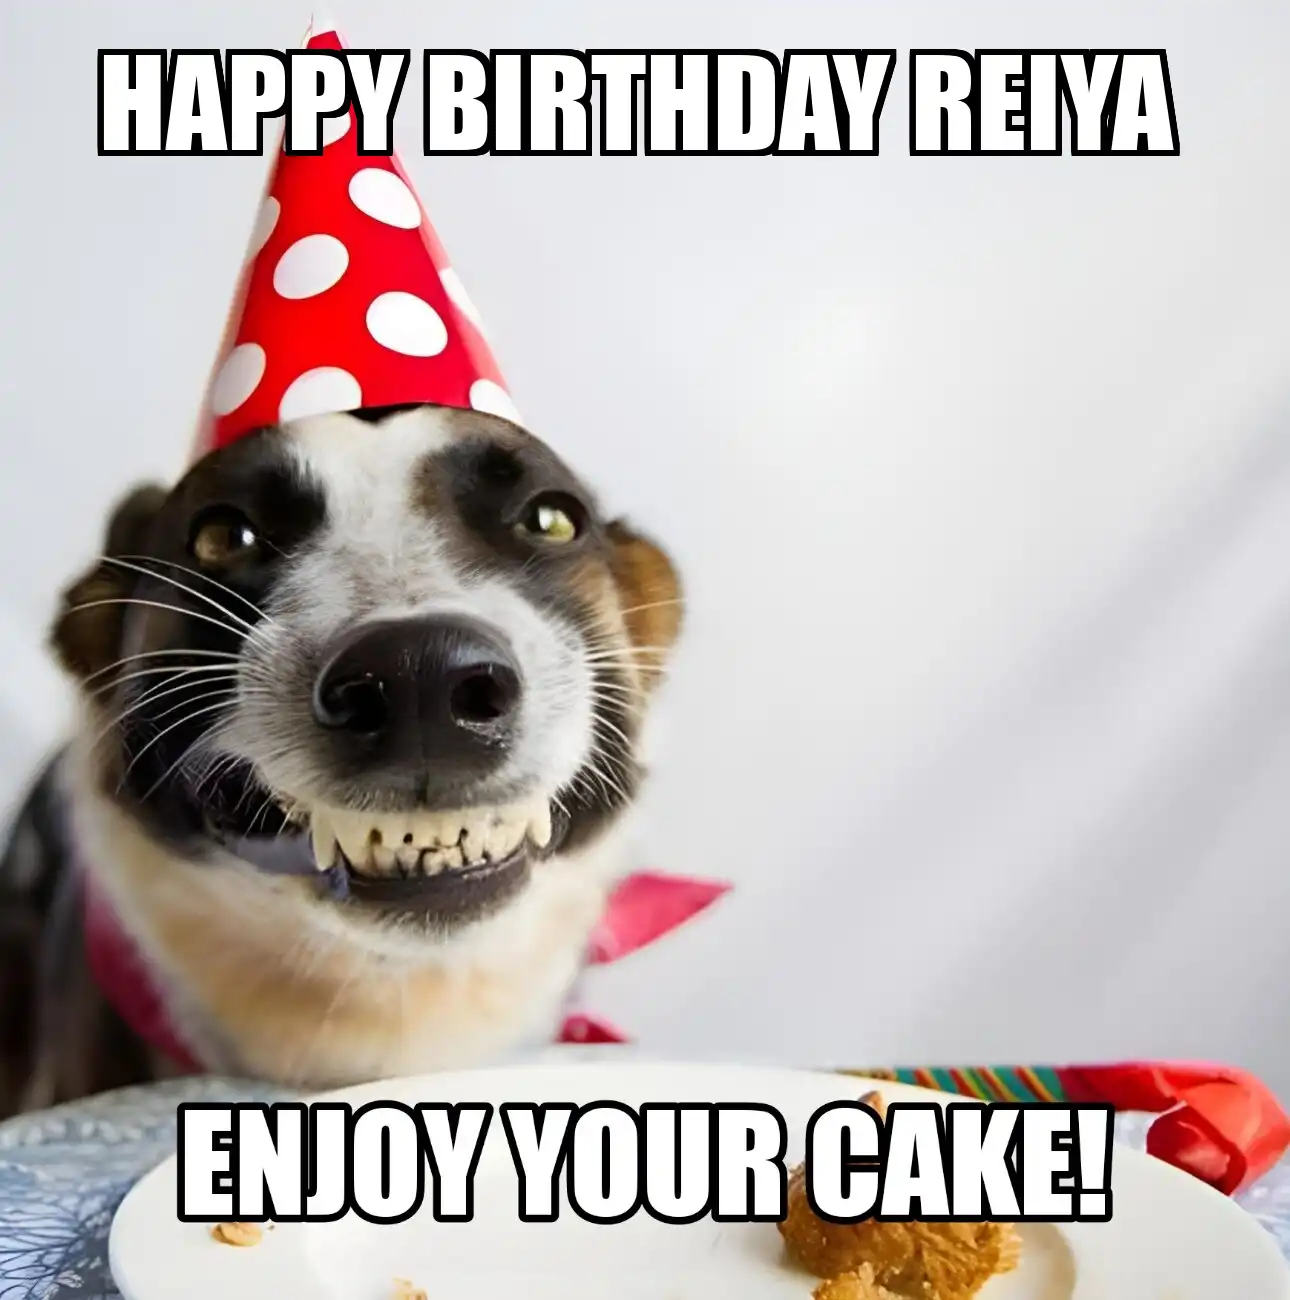 Happy Birthday Reiya Enjoy Your Cake Dog Meme